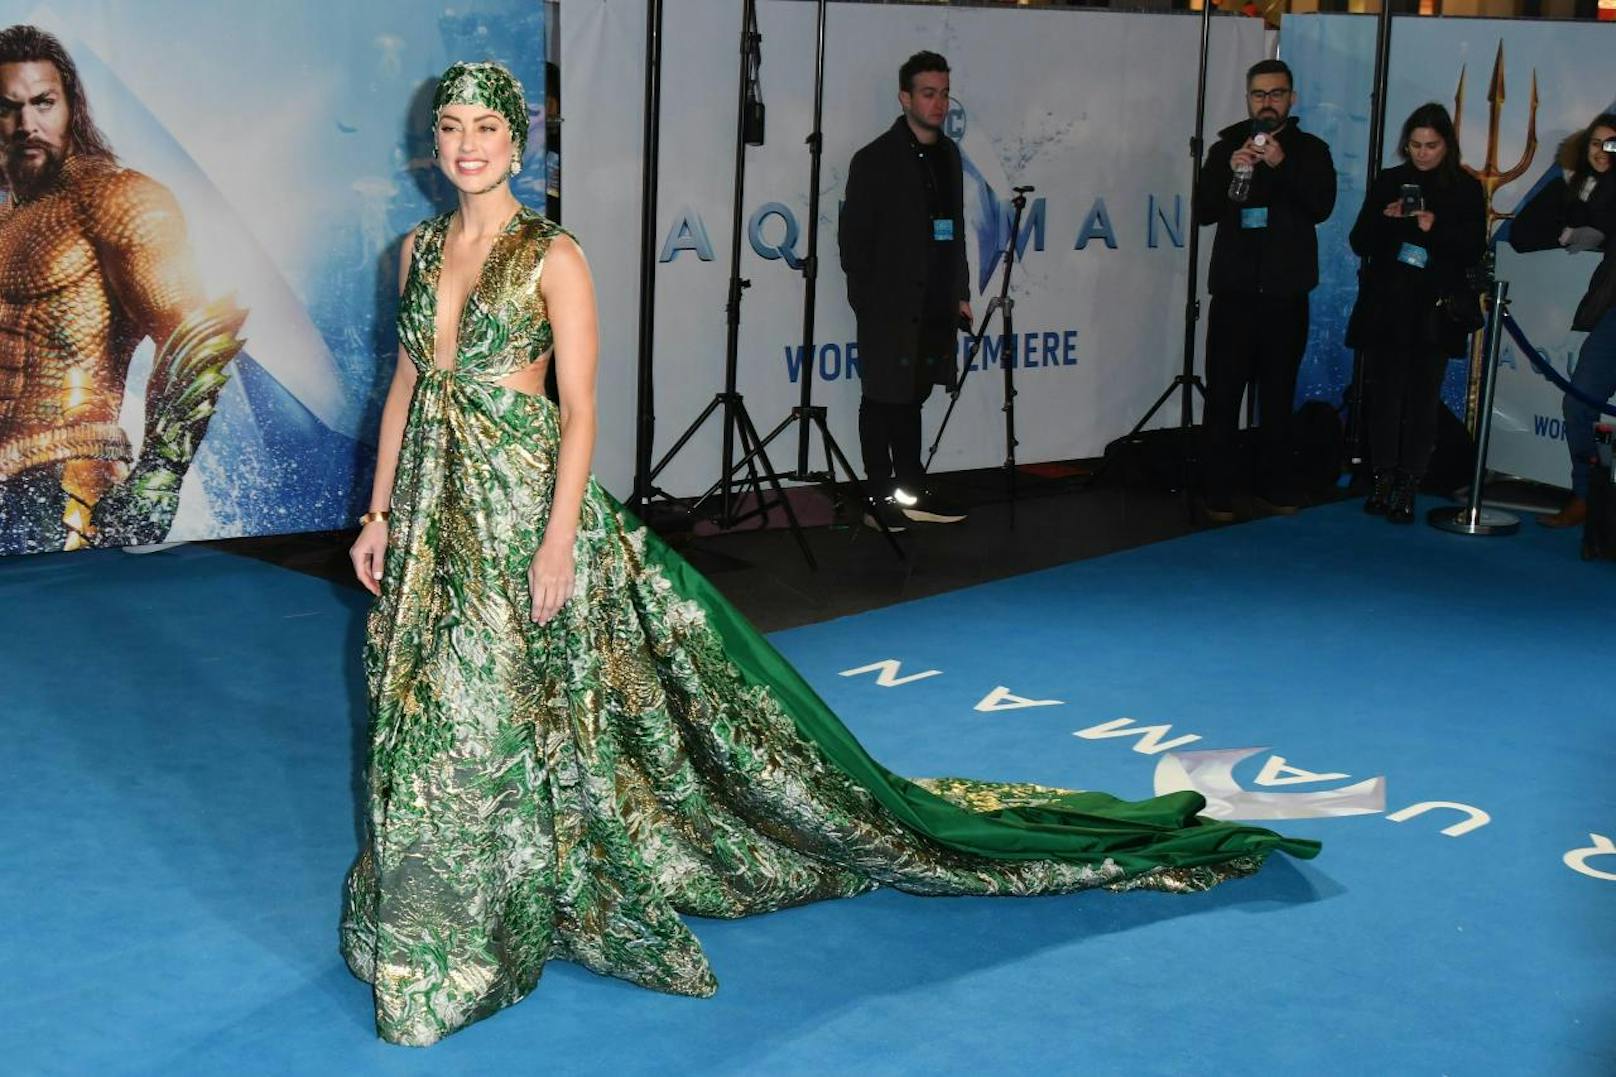 "Aquaman" startet am 21.12.2018 in den österreichischen Kinos.